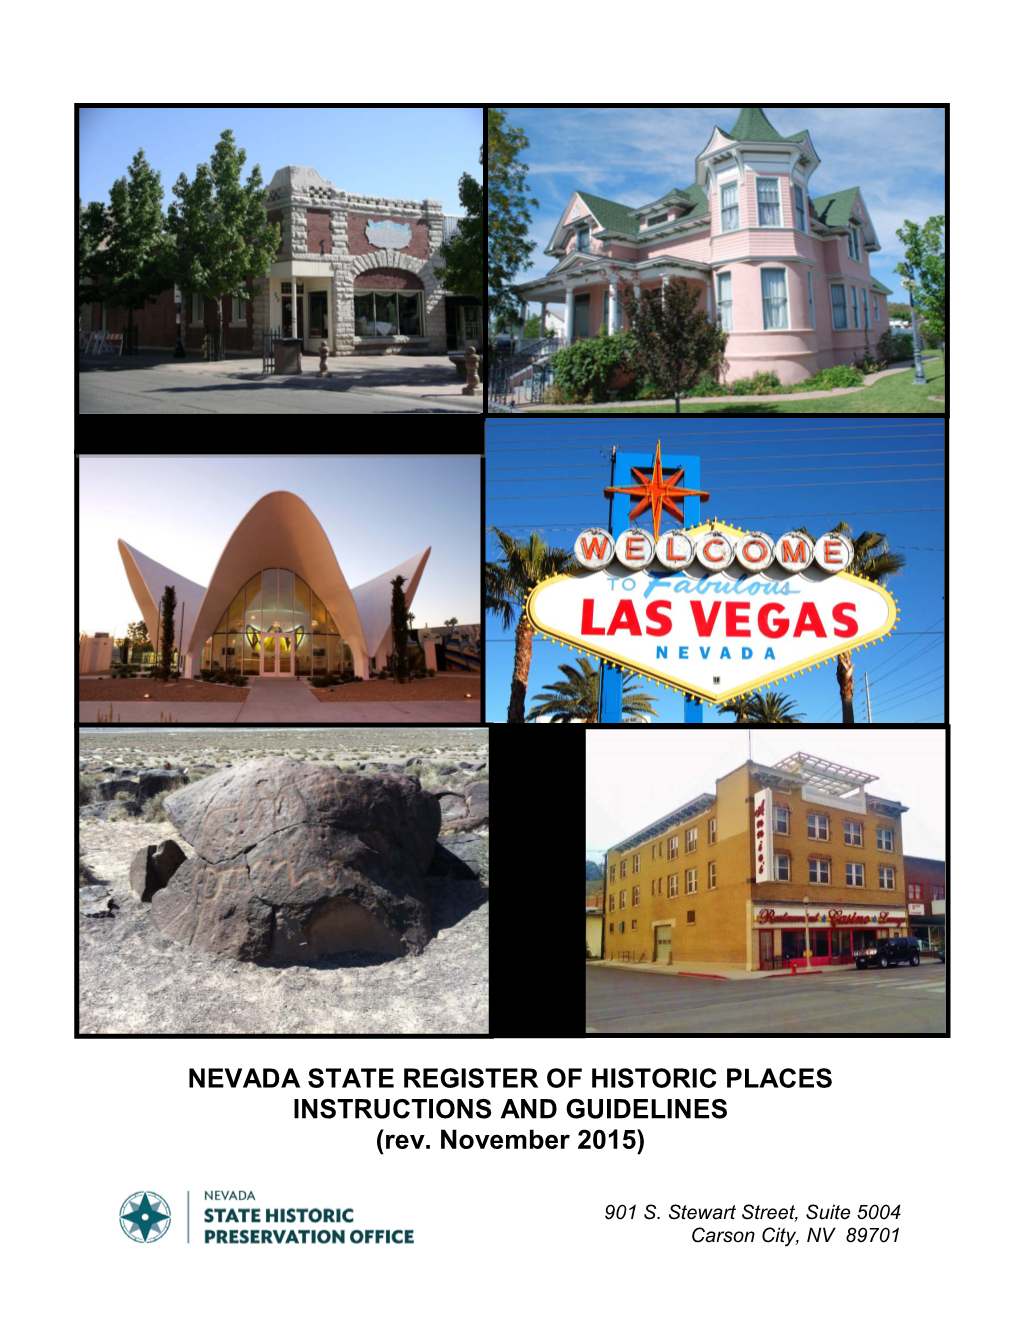 Nevada State Register Program Guidelines